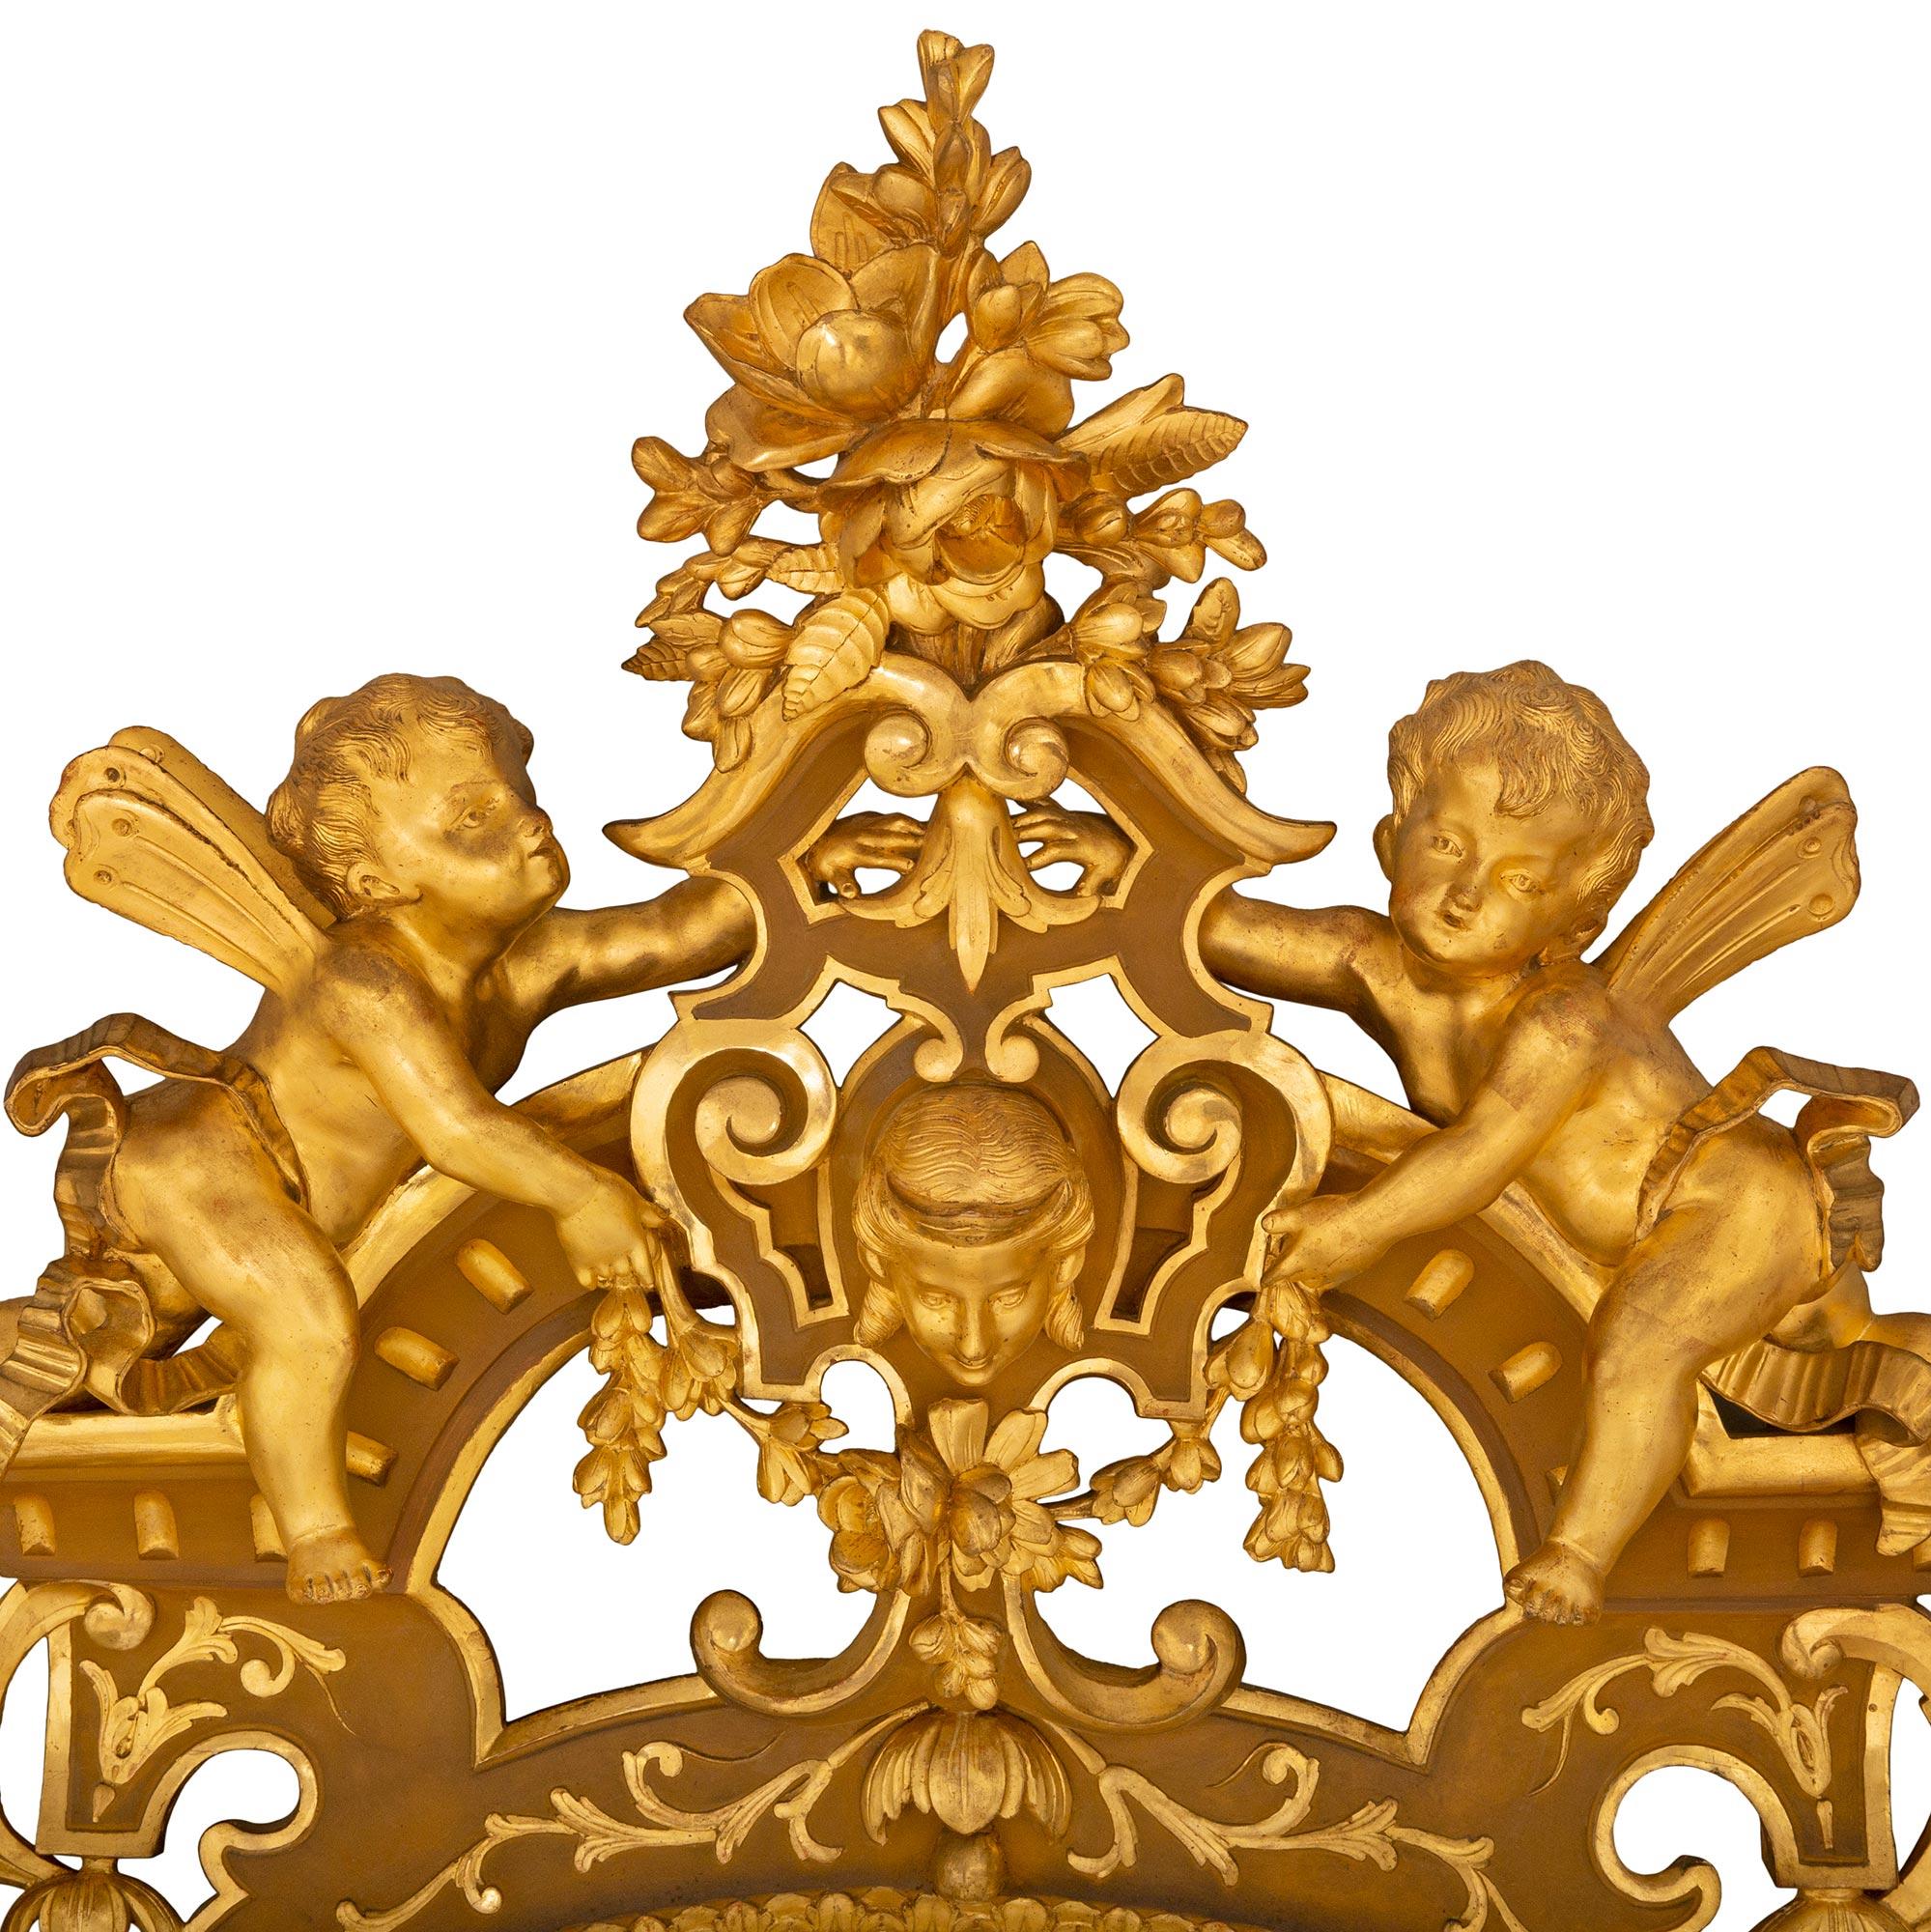 Une sensationnelle et très impressionnante console et miroir en bois doré, feuilles d'argent et bois patiné de style Renaissance italienne du 19ème siècle. La console repose sur une base en forme de feston avec une bande dorée et feuillue au-dessous